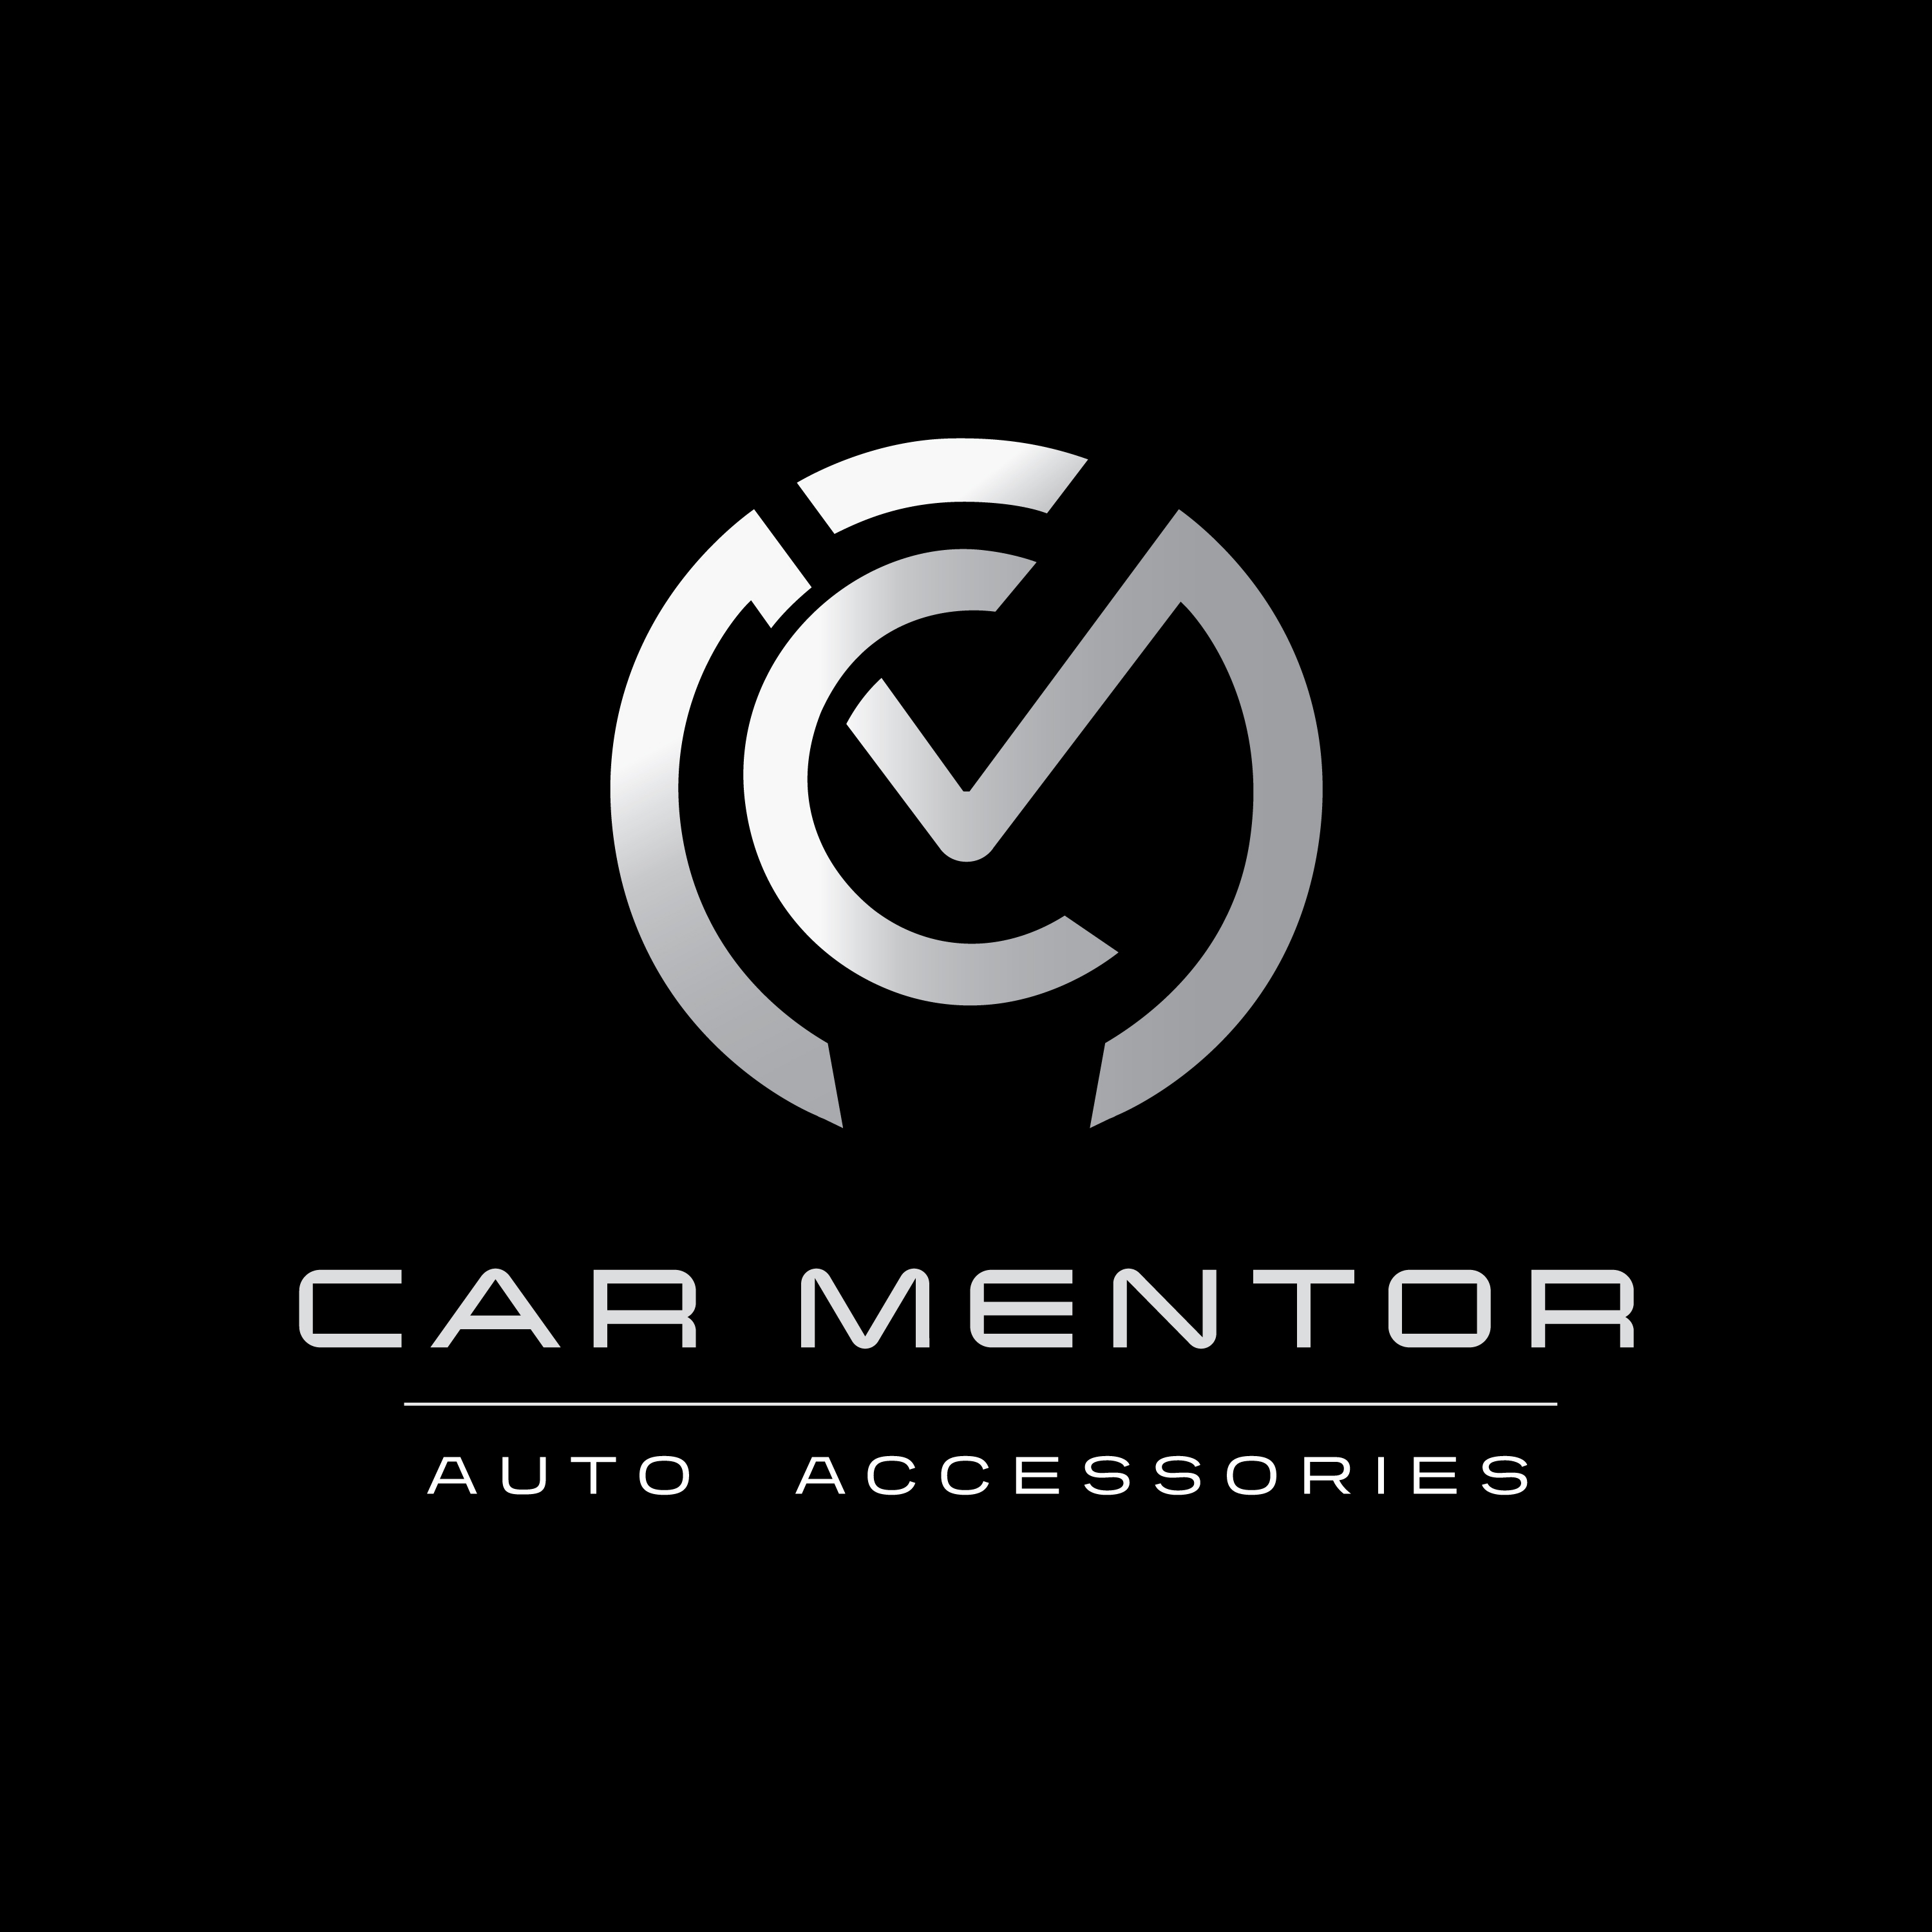 https://my.mncjobz.com/company/car-mentor-auto-accessories